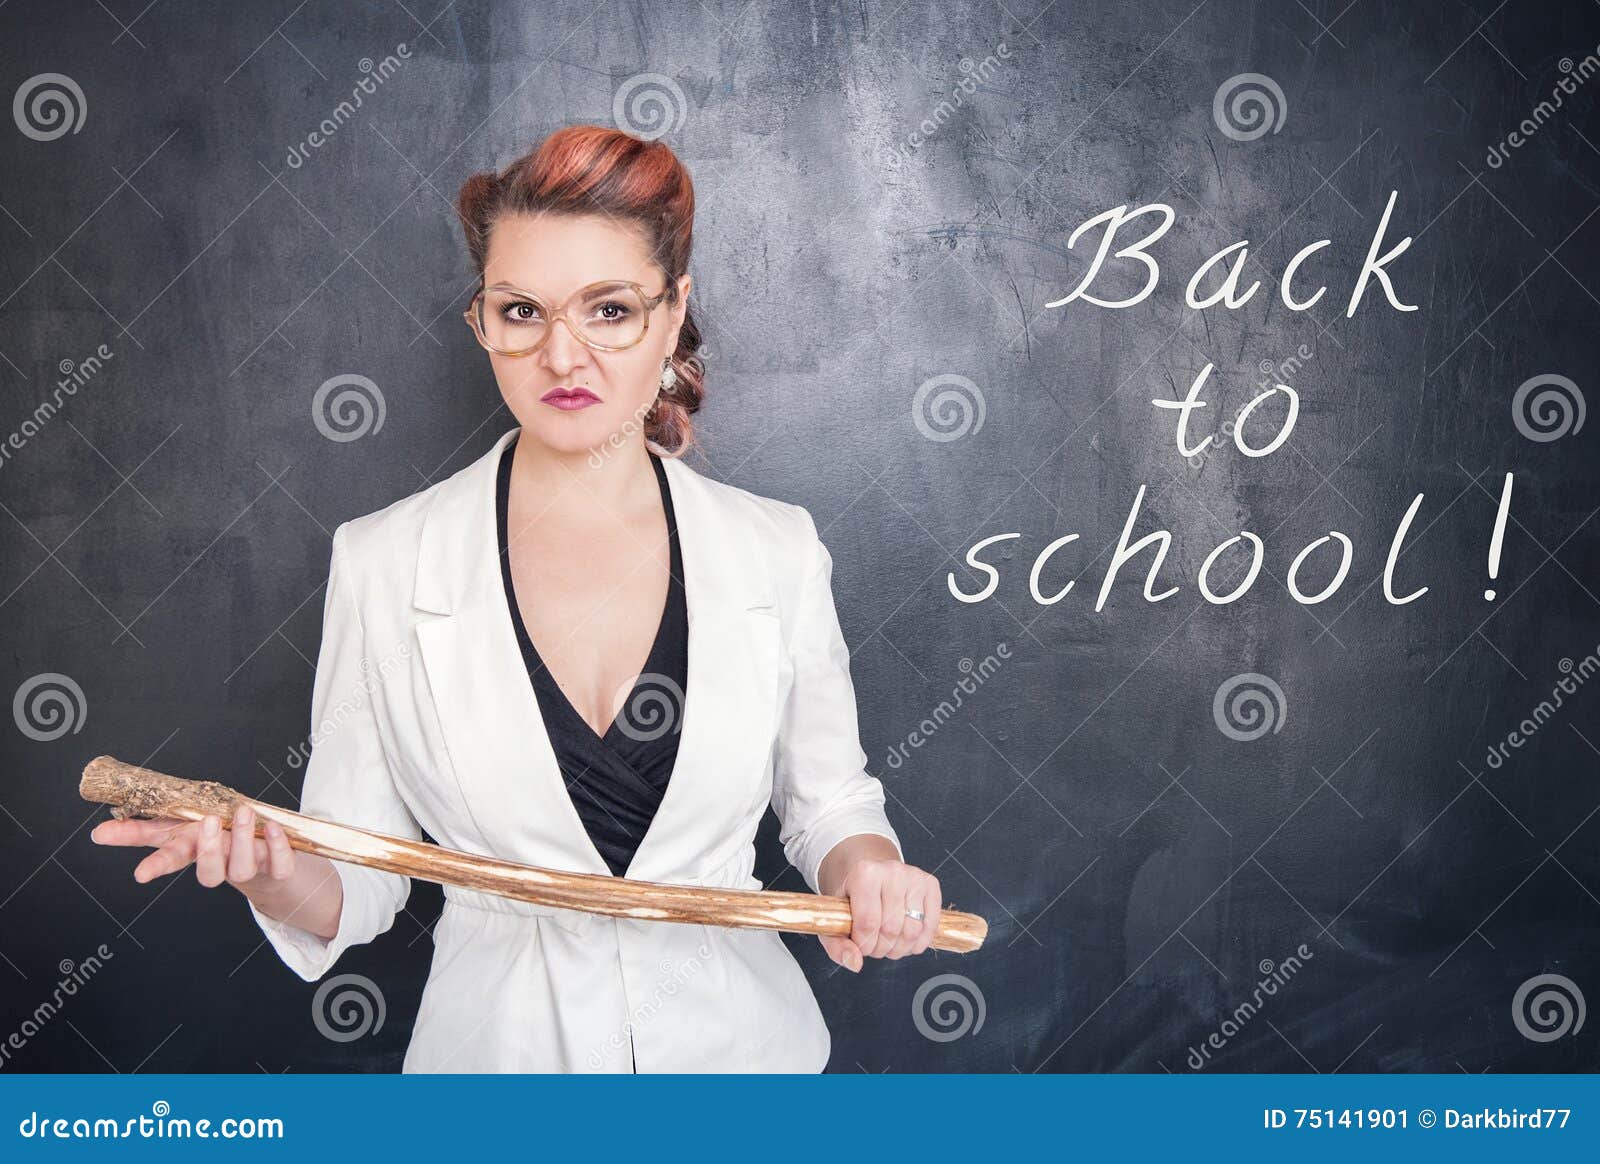 angry-teacher-wooden-stick-chalkboard-blackboard-background-75141901.jpg